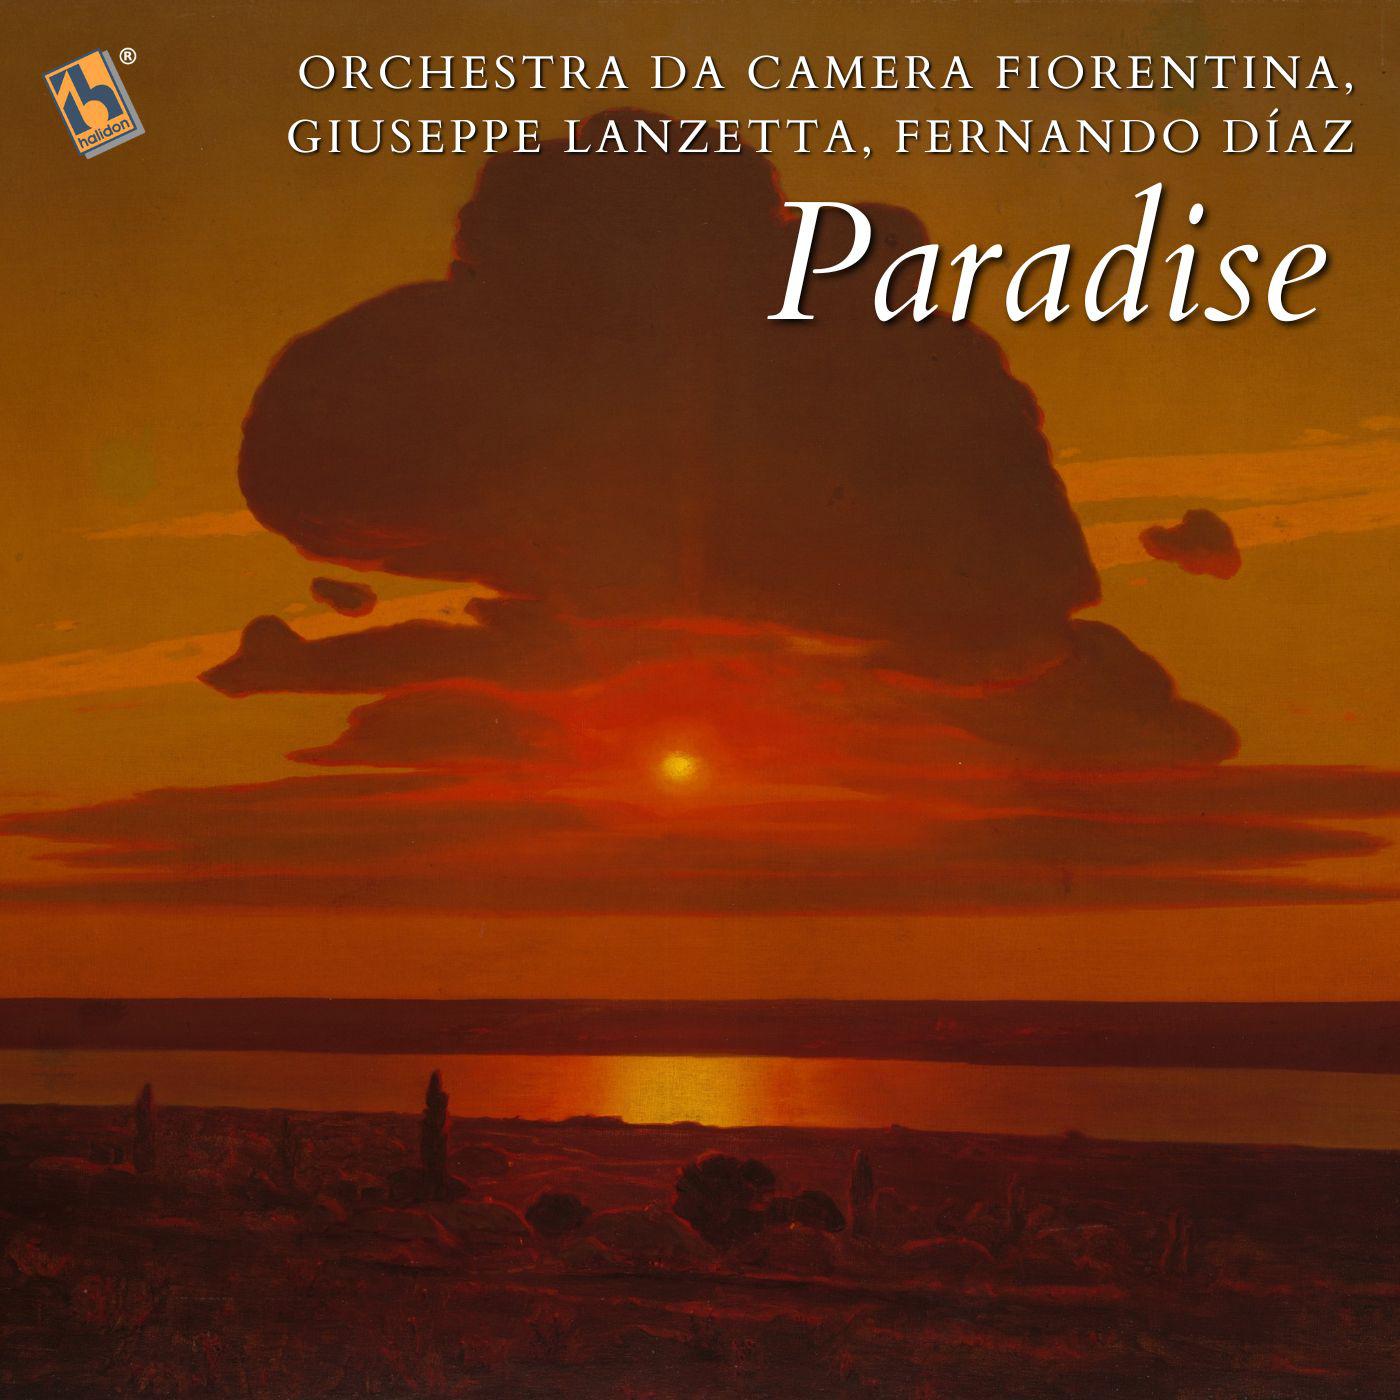 Orchestra da Camera Fiorentina - Paradise (Orchestral Version, Live)